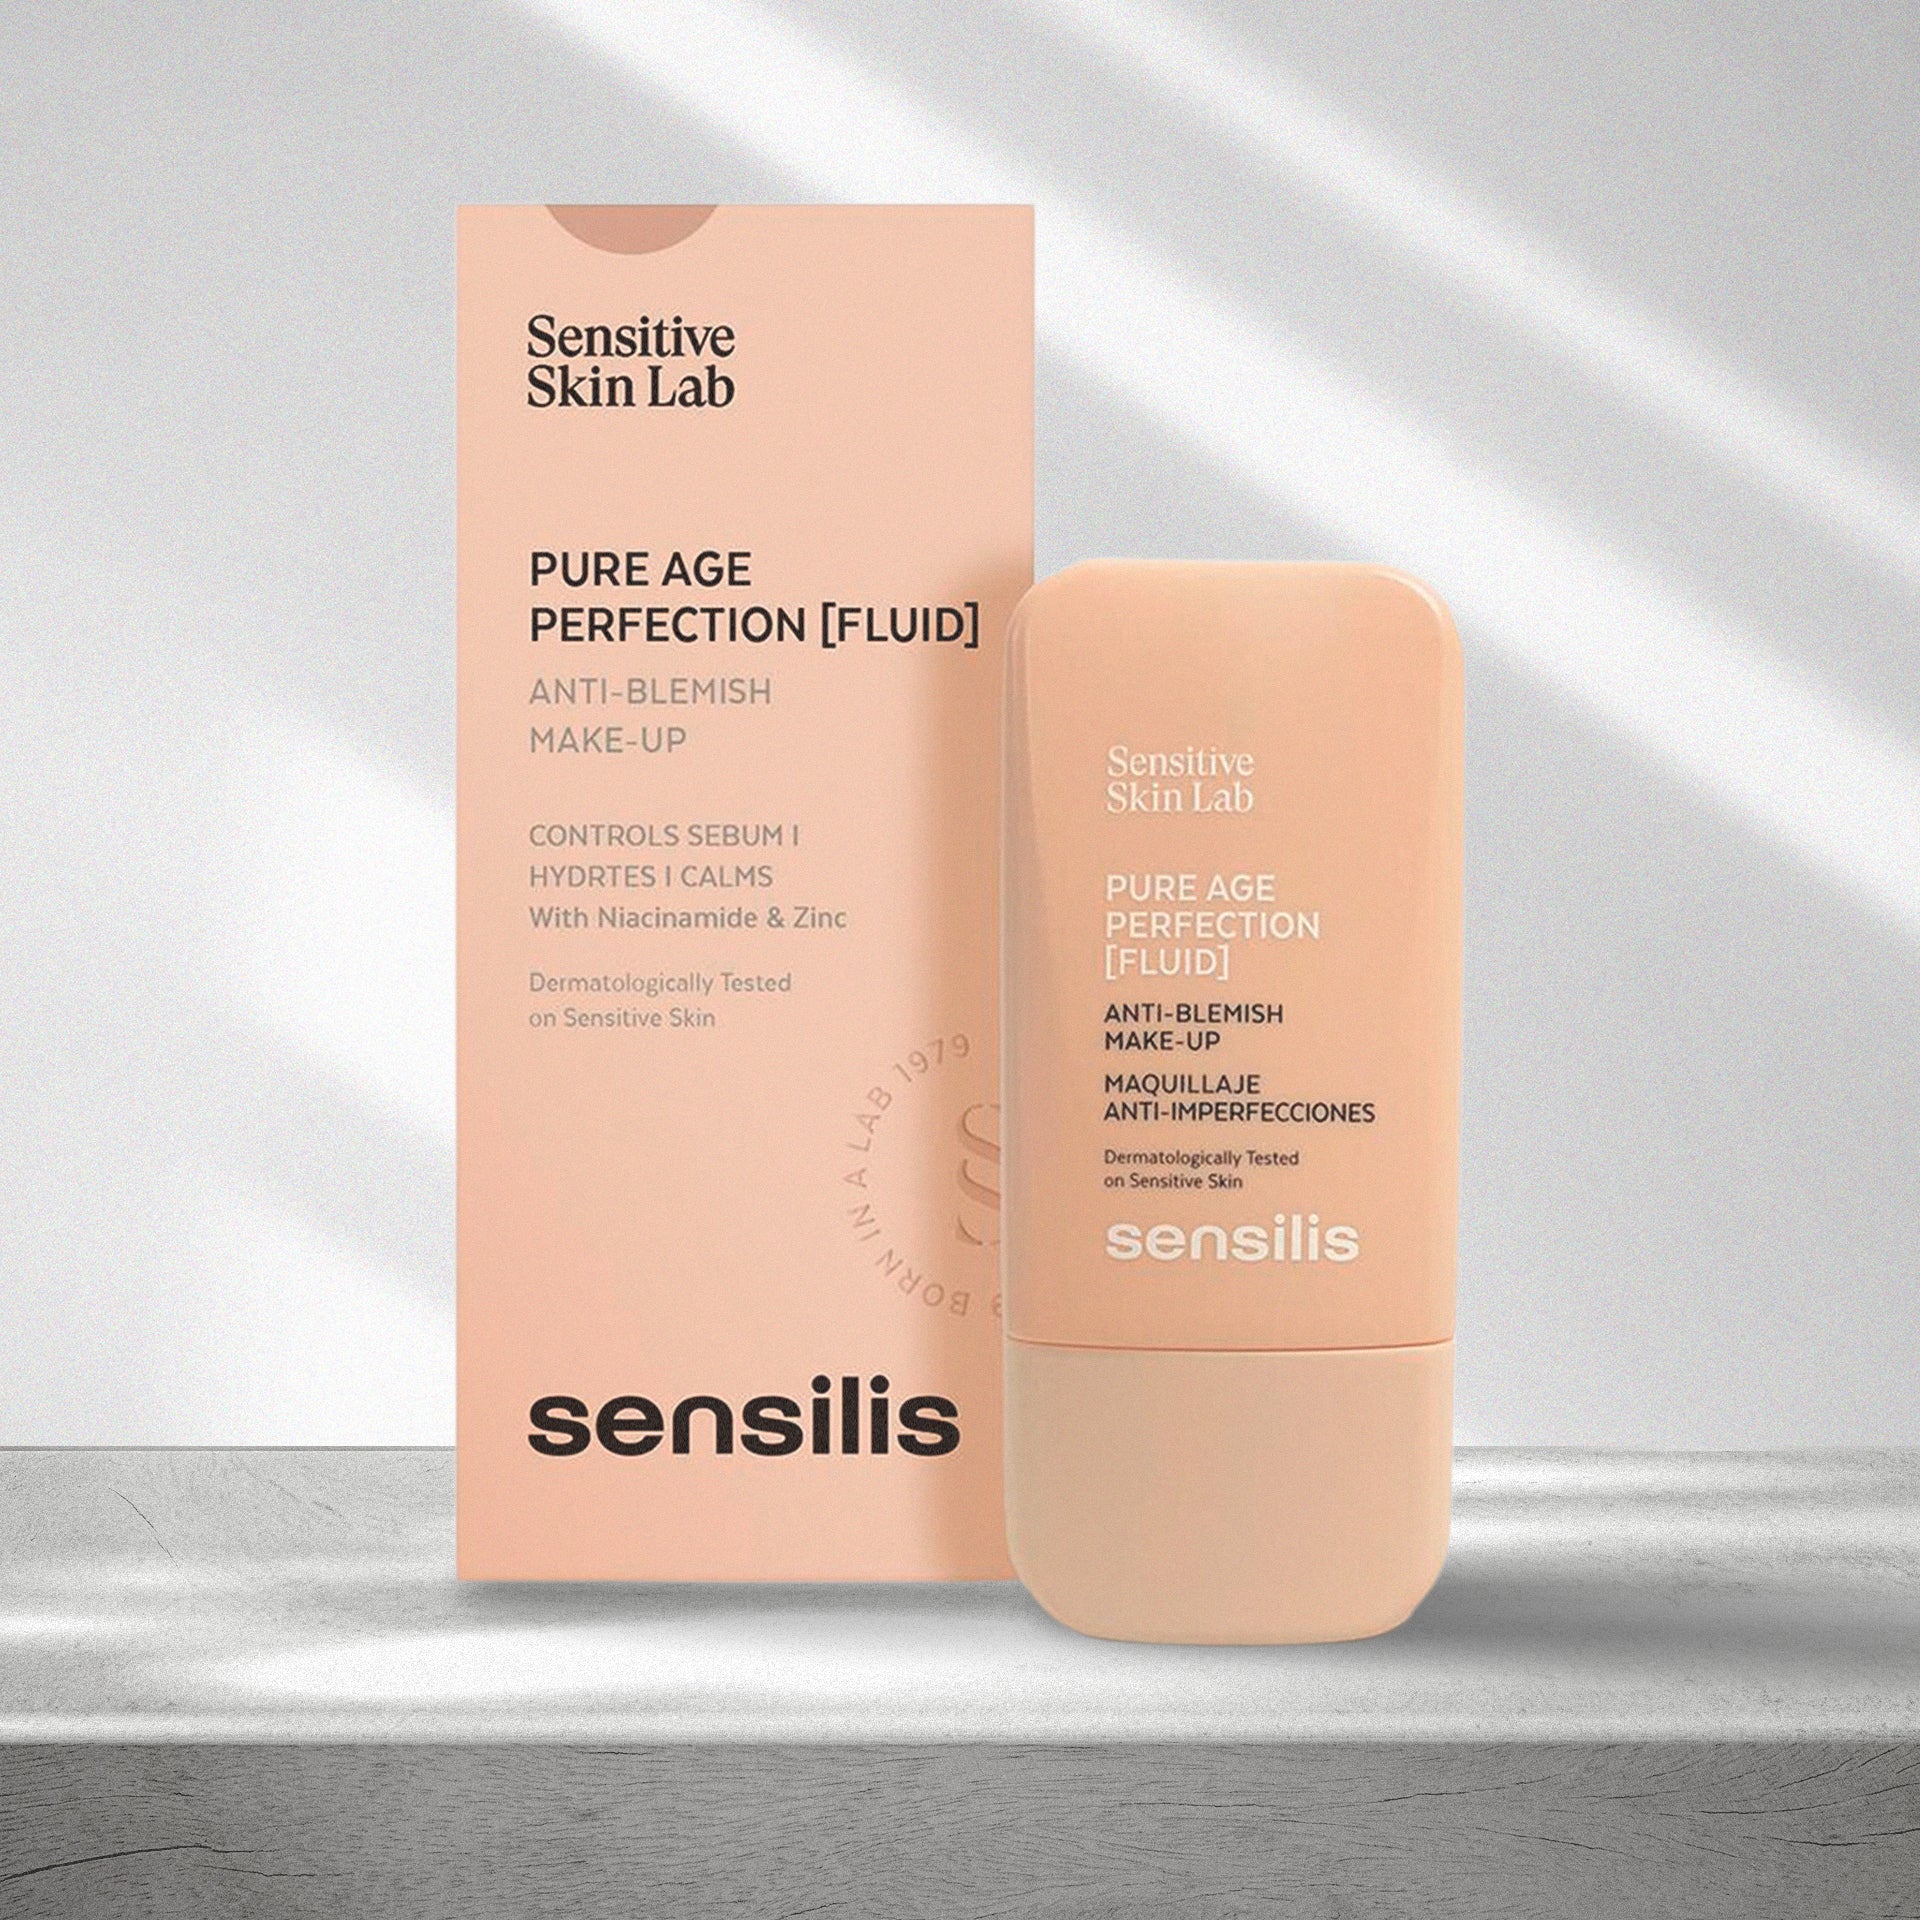 Sensilis Pure age Perfection maquillaje anti-imperfecciones - tono Sand